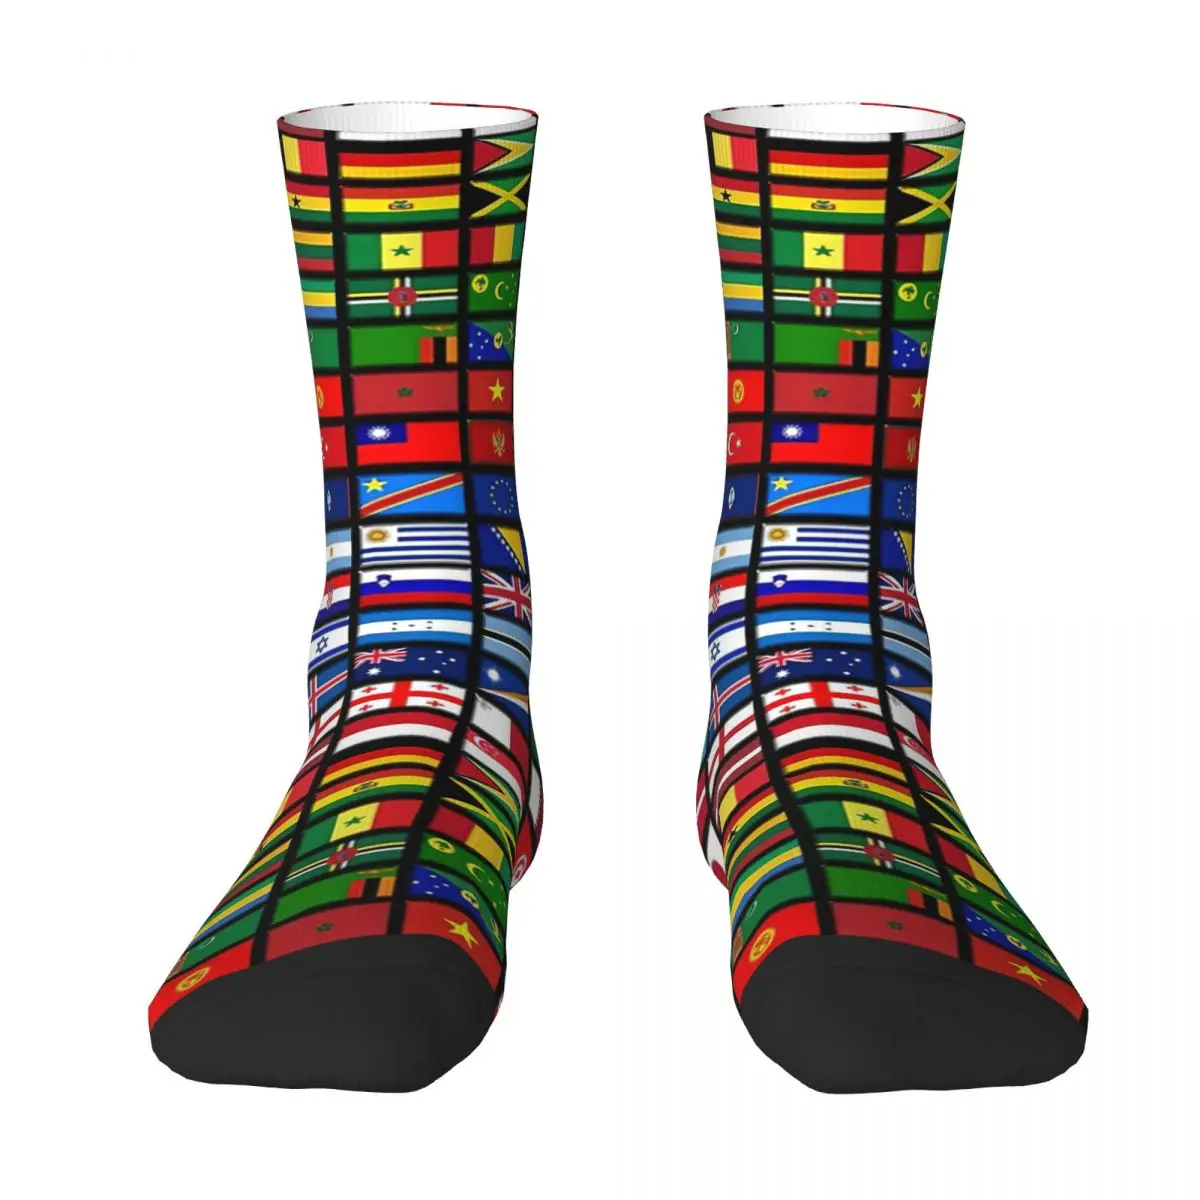 Flags Of The Countries Of The World, International Adult Socks Unisex socks,men Socks women Socks